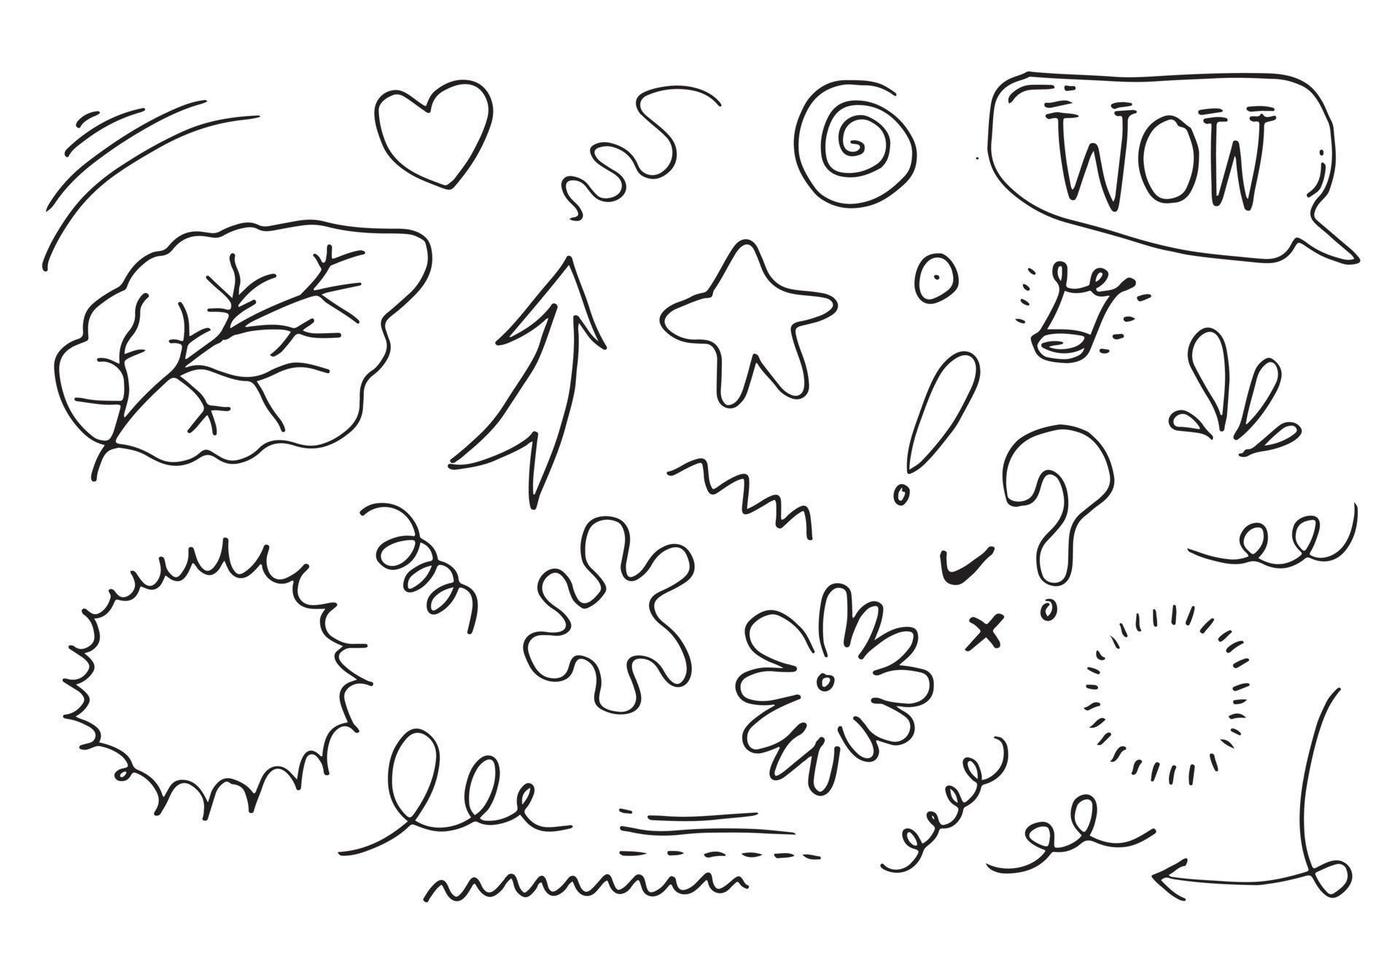 elementos do conjunto de mão desenhada, preto sobre fundo branco. setas, coroa, corações, amor, exclamação, folhas, flores, redemoinho, estrela e texto uau, para design de conceito. vetor